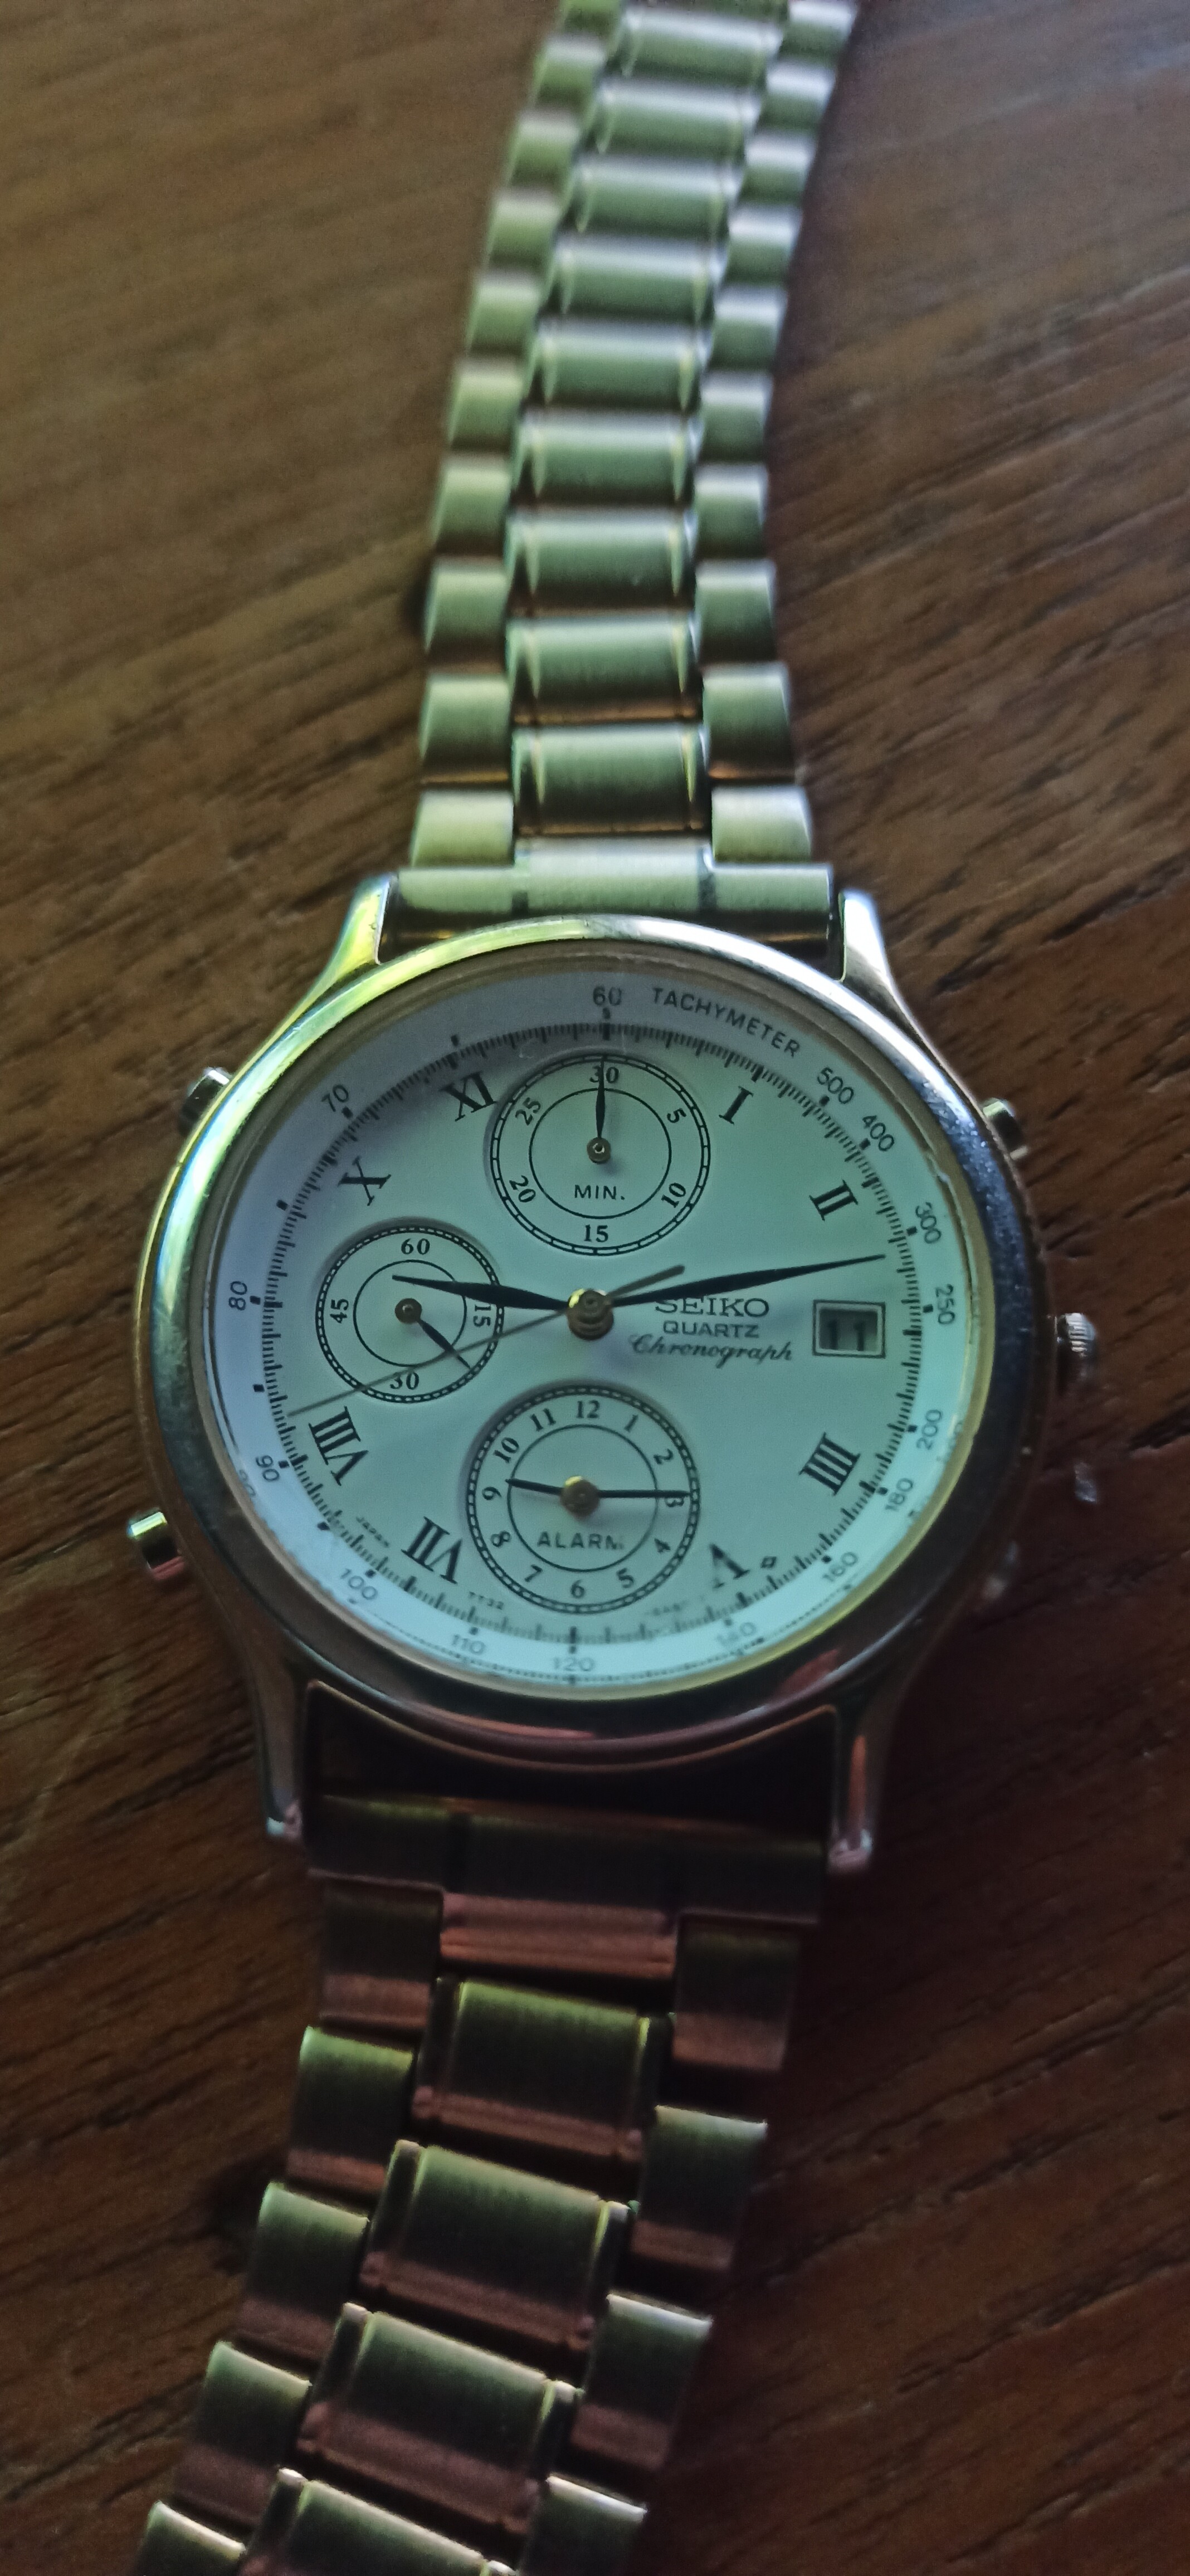 Seiko 7t32 probleem - Algemene Horlogepraat  - het forum  voor liefhebbers van horloges